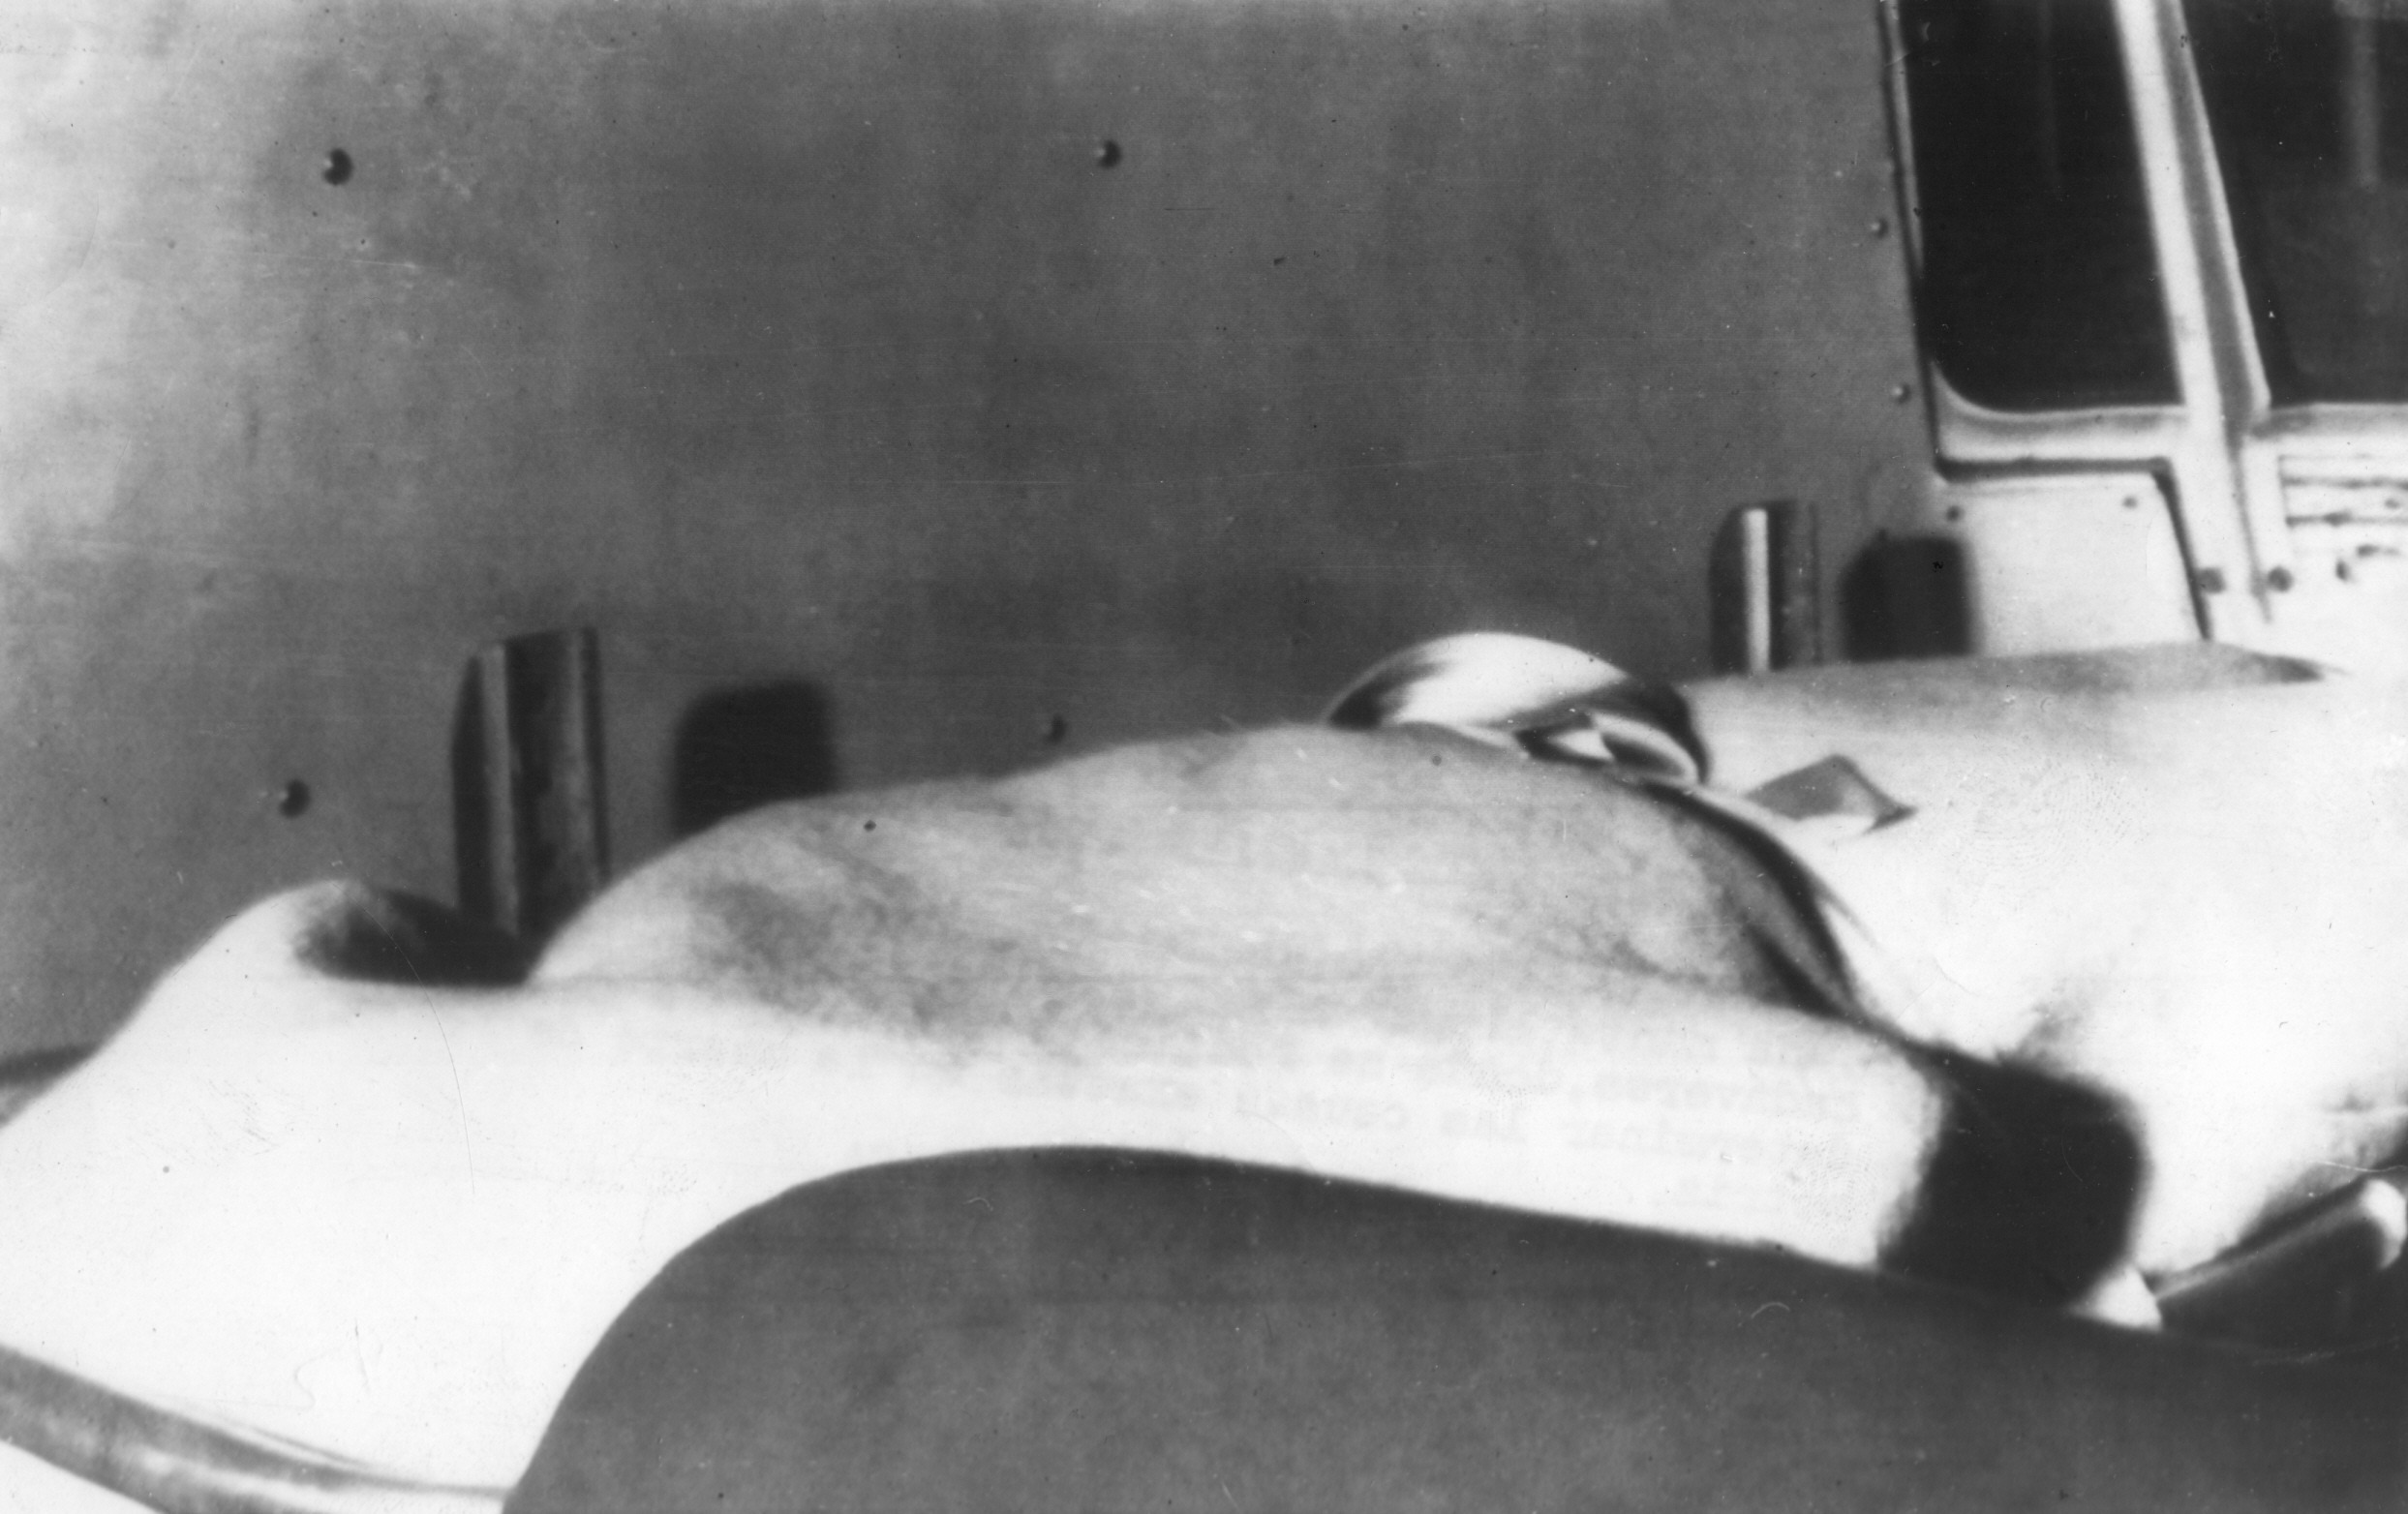 La madrugada del 5 de agosto el cadáver de Marilyn Monroe llegaba a la morgue para practicarle la autopsia. El forense dictaminó que se había suicidado con una sobredosis de somníferos, pero las causas de su muerte permanecen aún confusas (UPI/EFE)
